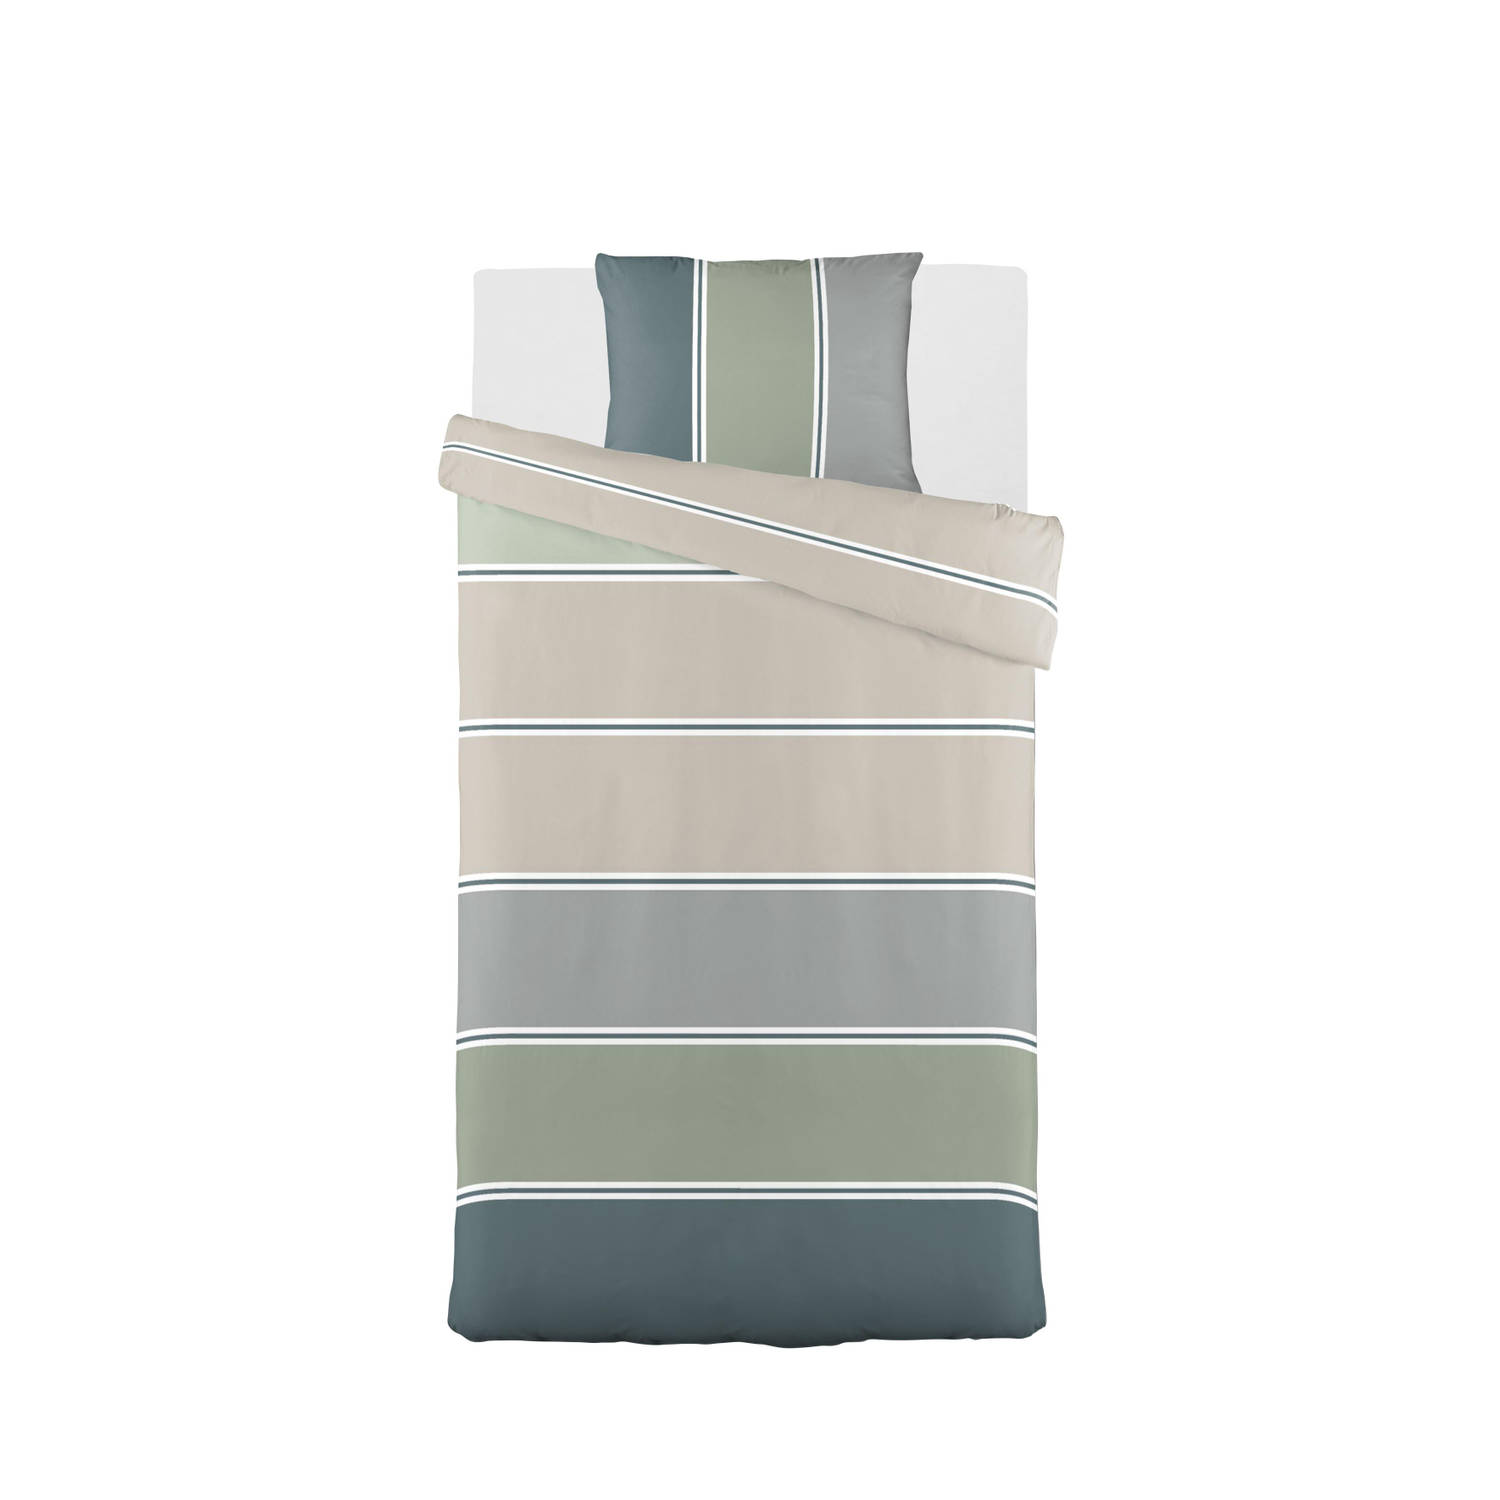 Blokker dekbedovertrek tuscany - 140x220 cm - groen/grijs